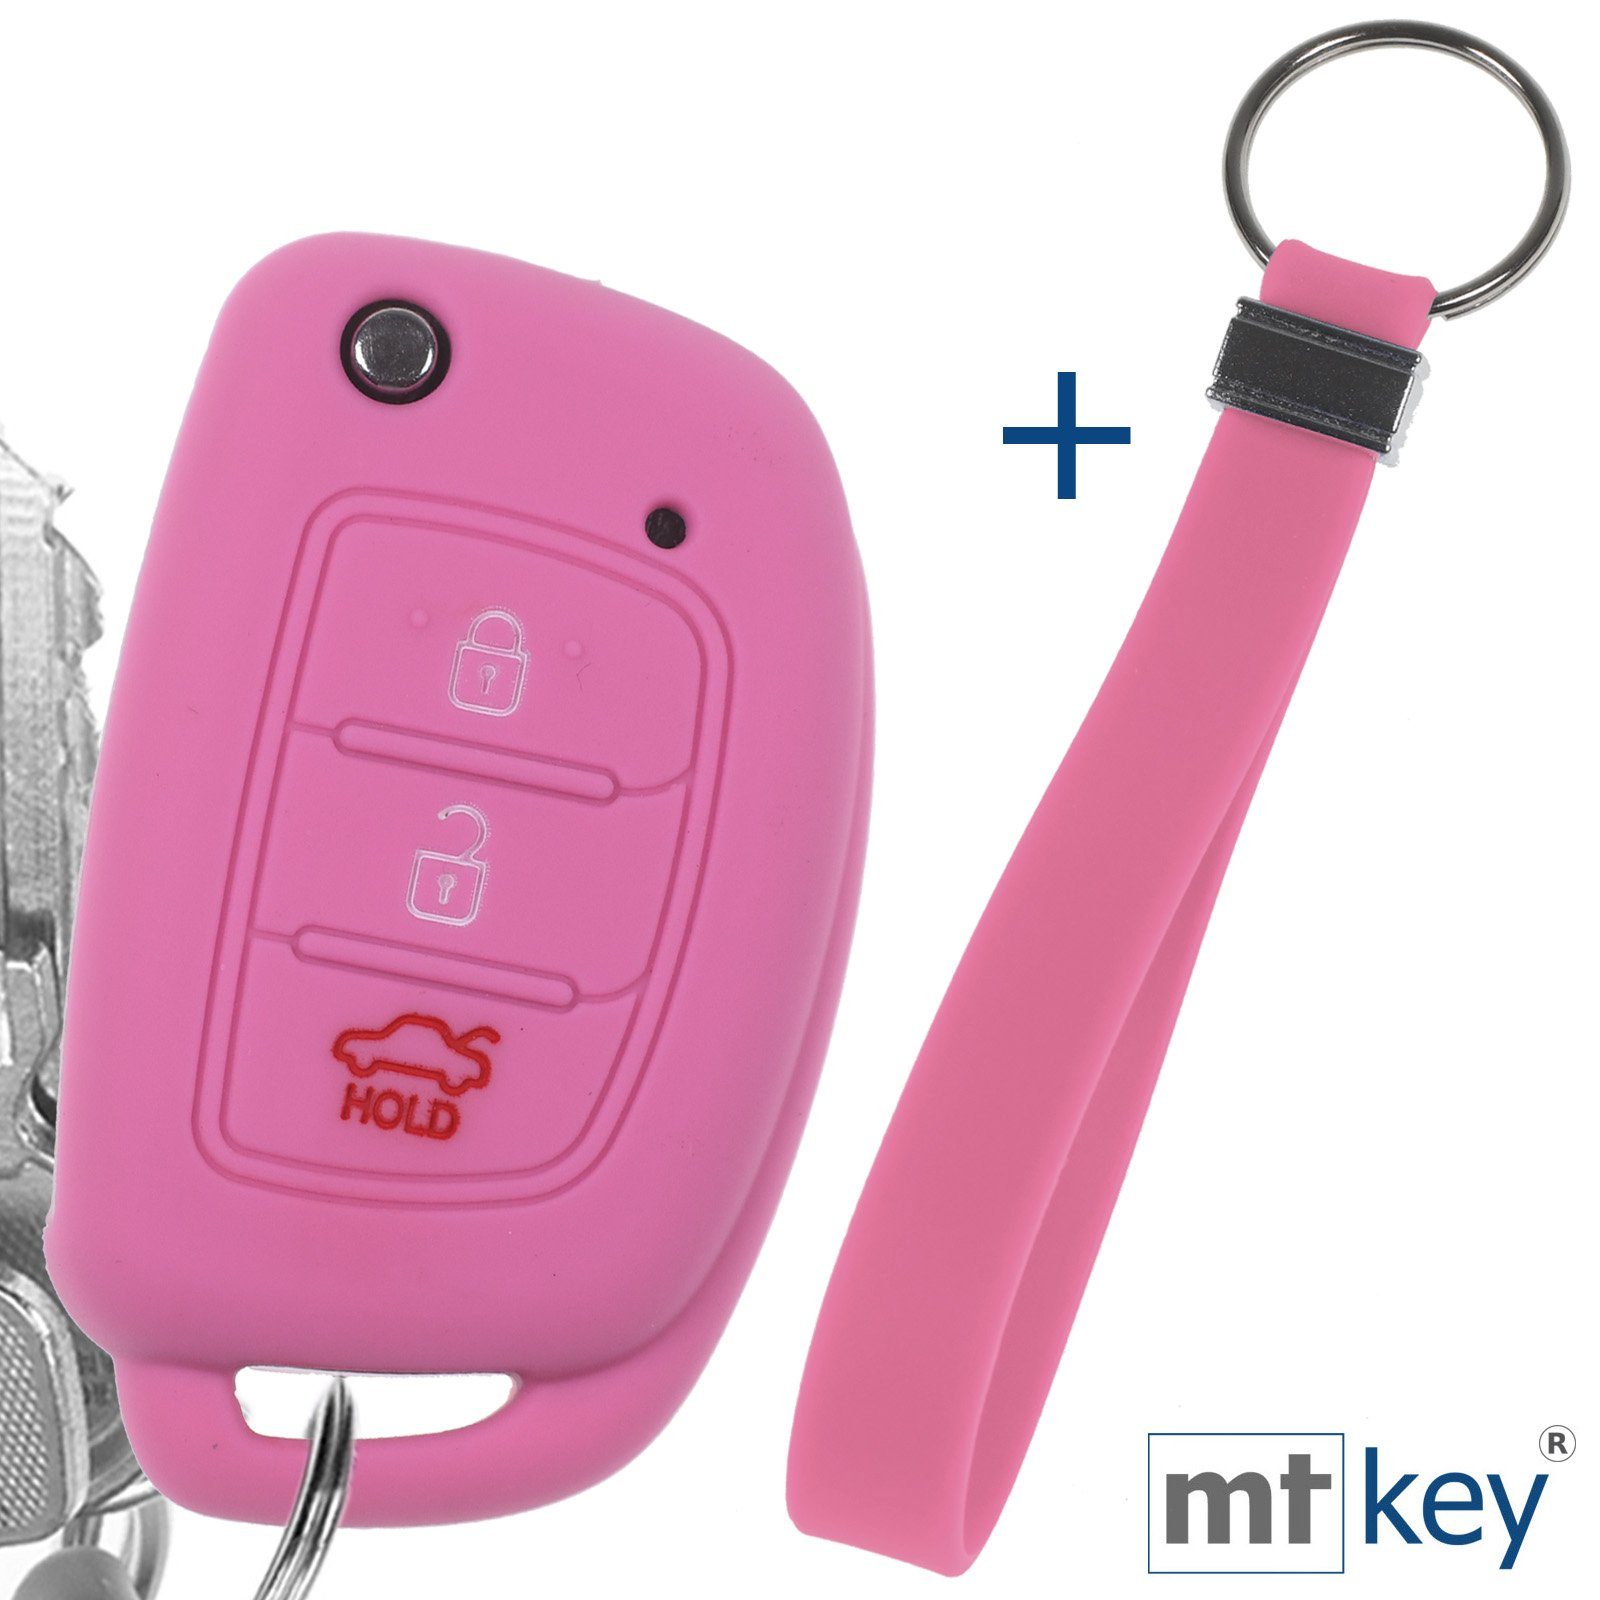 mt-key Schlüsseltasche Autoschlüssel Silikon Schutzhülle im Wabe Design Rosa + Schlüsselband, für Hyundai i10 i20 ix25 ix35 i40 Accent Tucson 3 Knopf Klappschlüssel